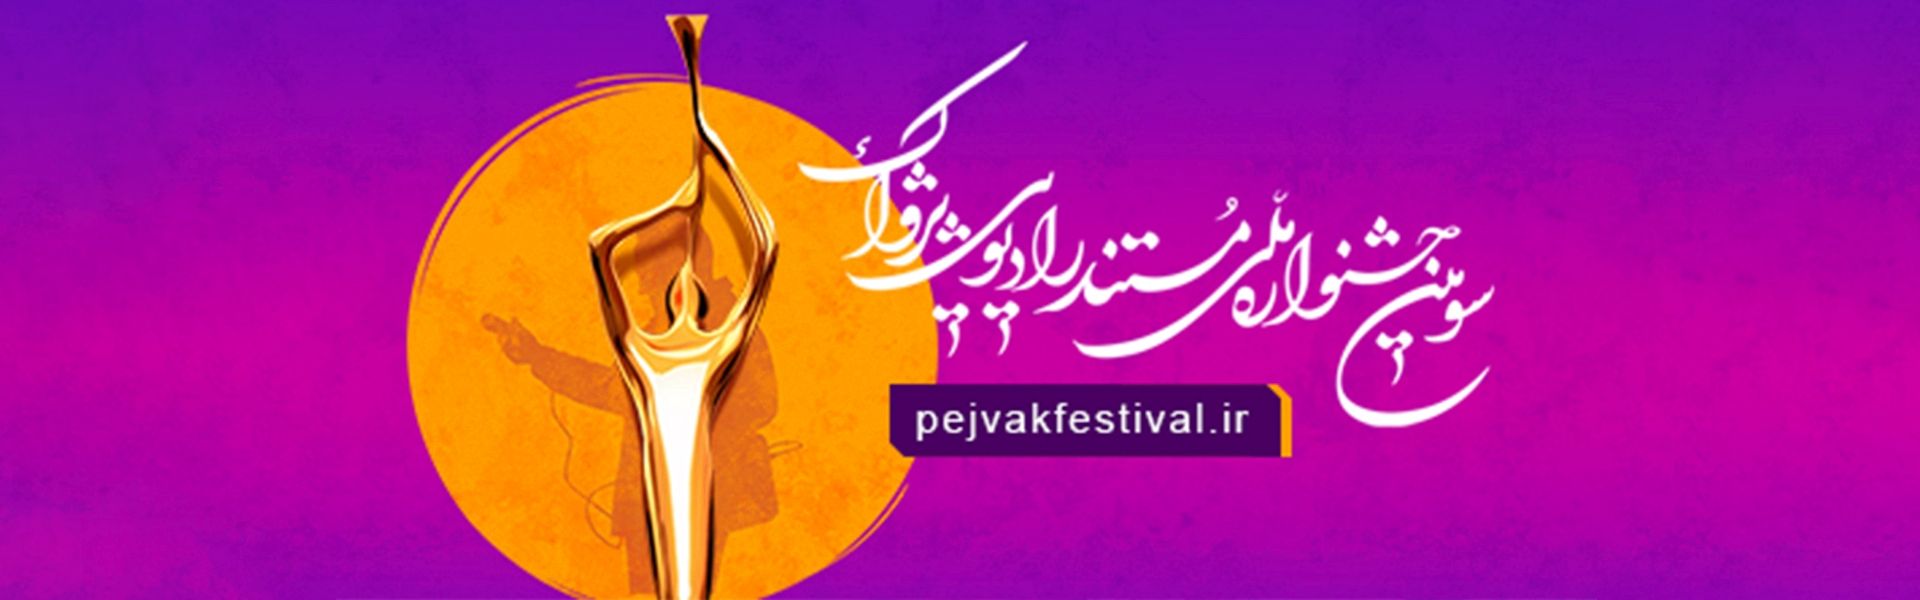 فراخوان سومین جشنواره ملی مستند رادیویی پژواك